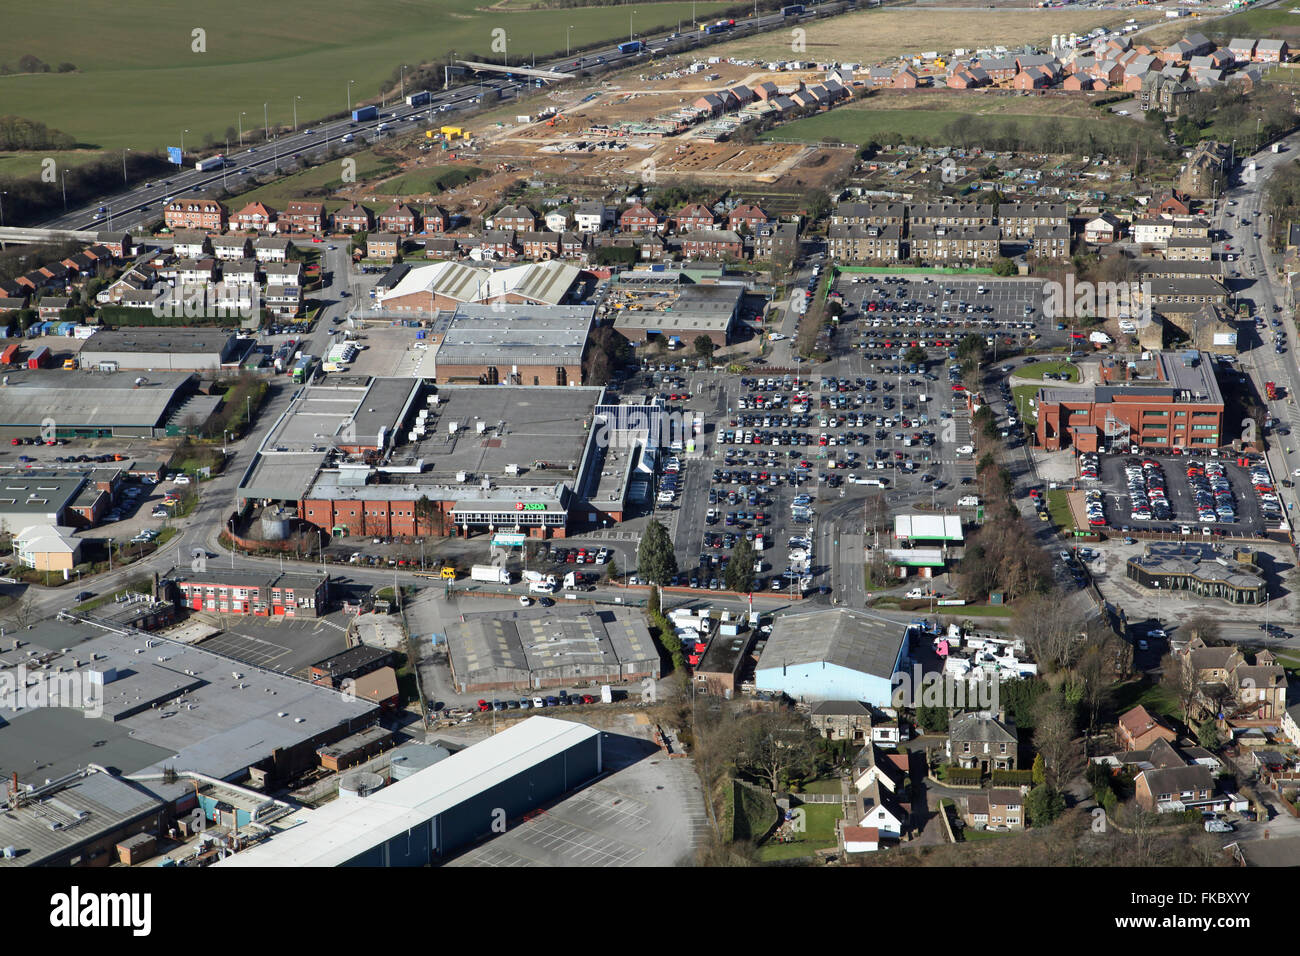 Vue aérienne du supermarché Asda sur l'Howley Park Road Estate à Morley, Leeds, Royaume-Uni Banque D'Images